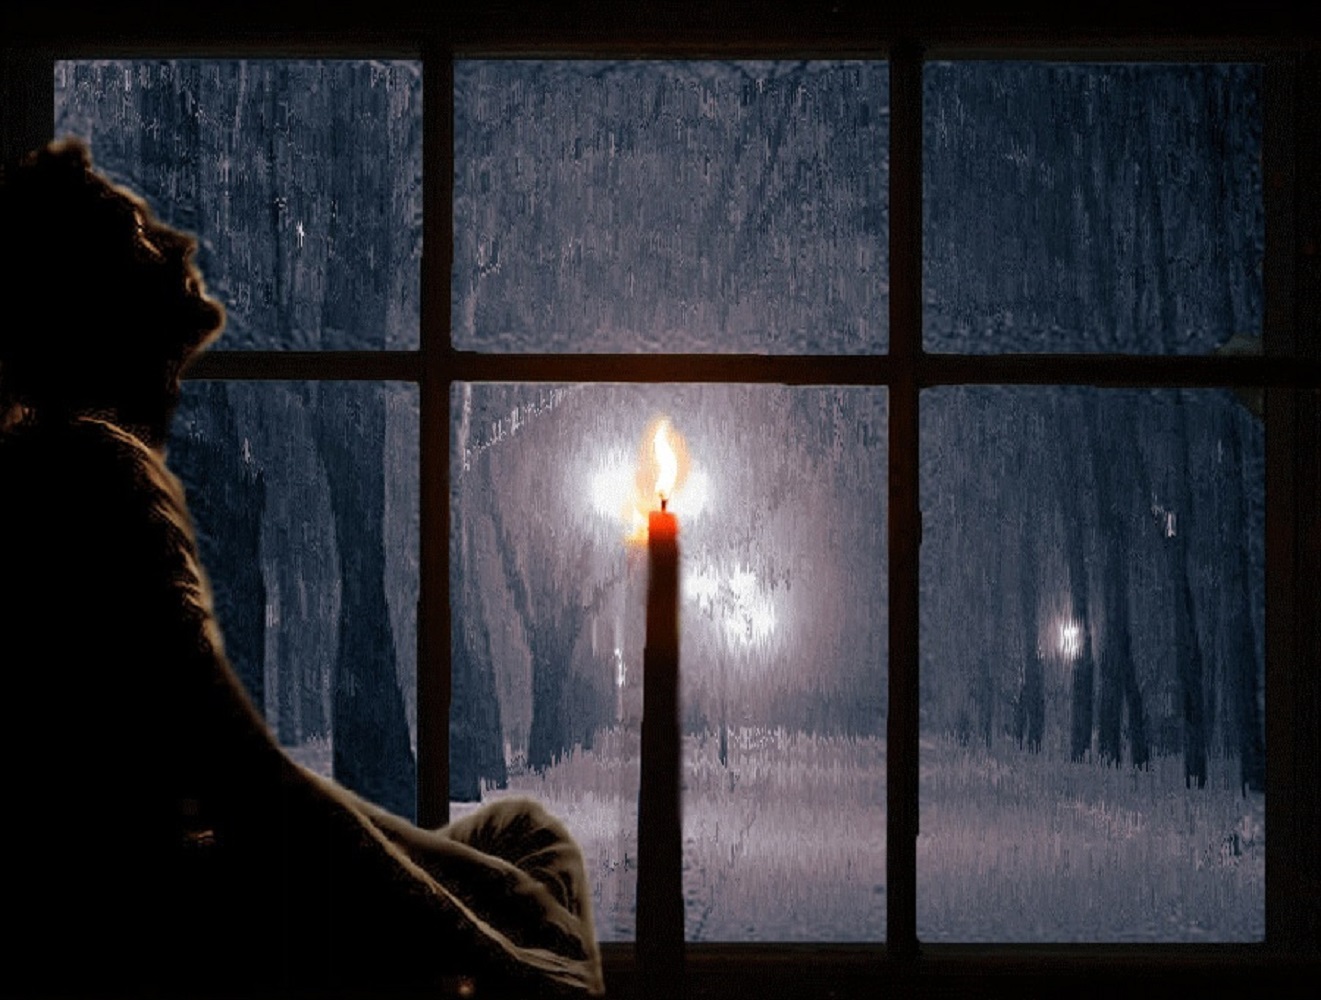 Одиноким будет вечер. Окно вечер. Зимний вечер. Снег за окном ночью. Зима за окном.